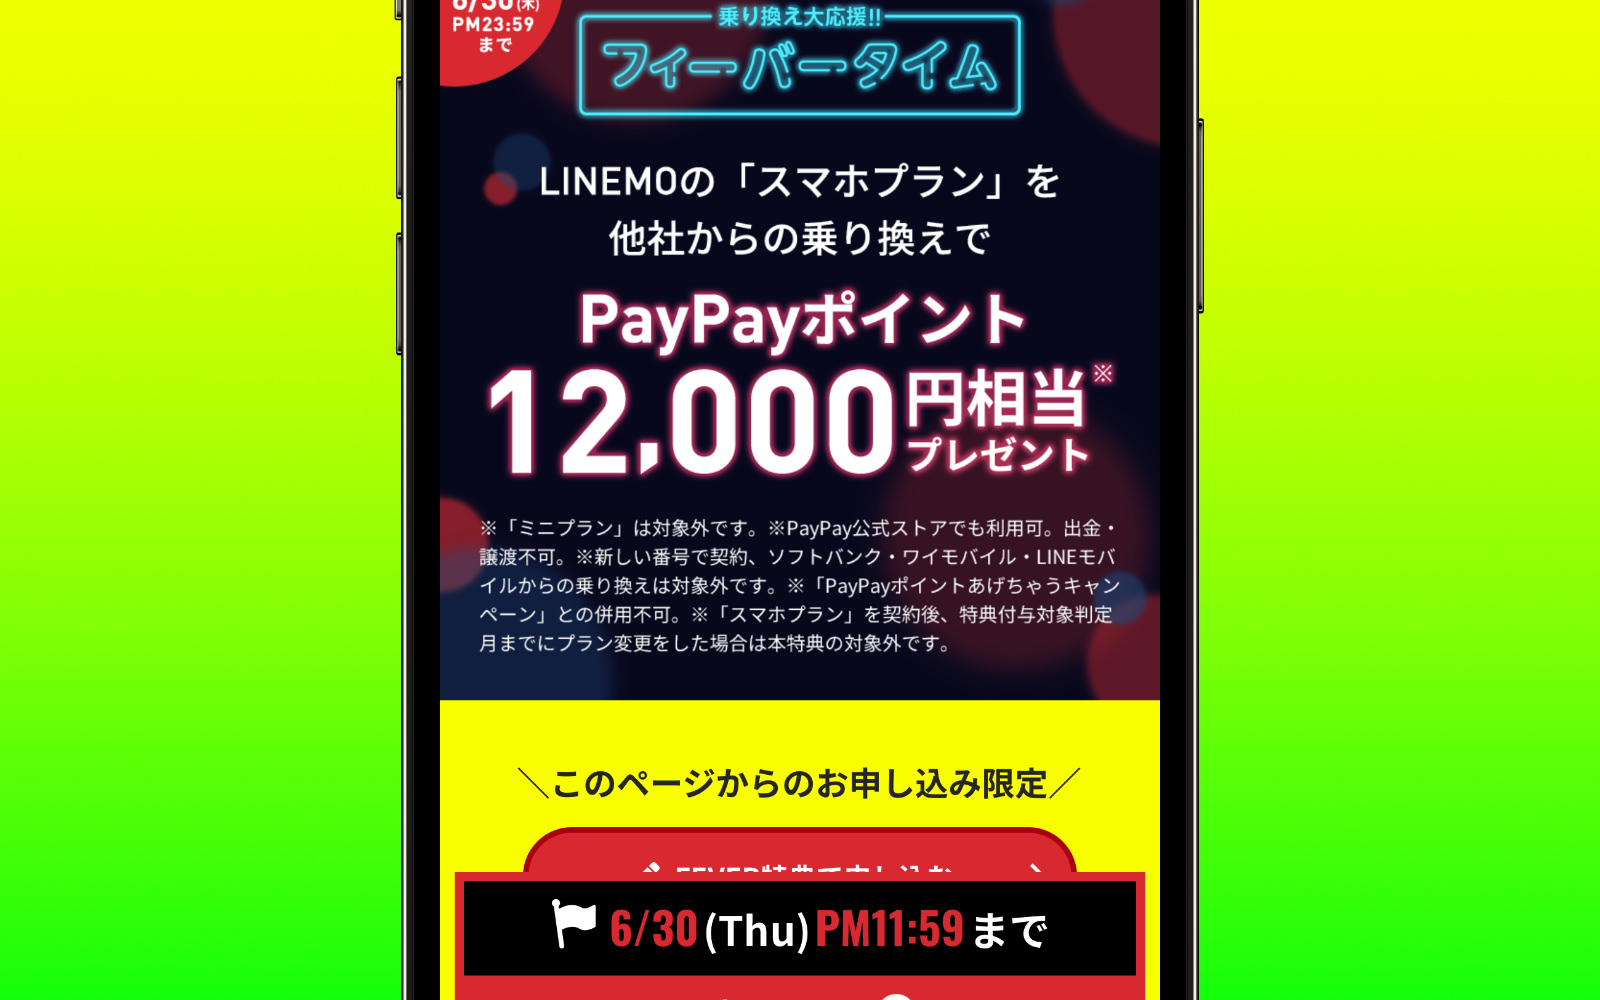 LINEMO「スマホプラン」へのMNPで最大12,000円のPayPayポイント